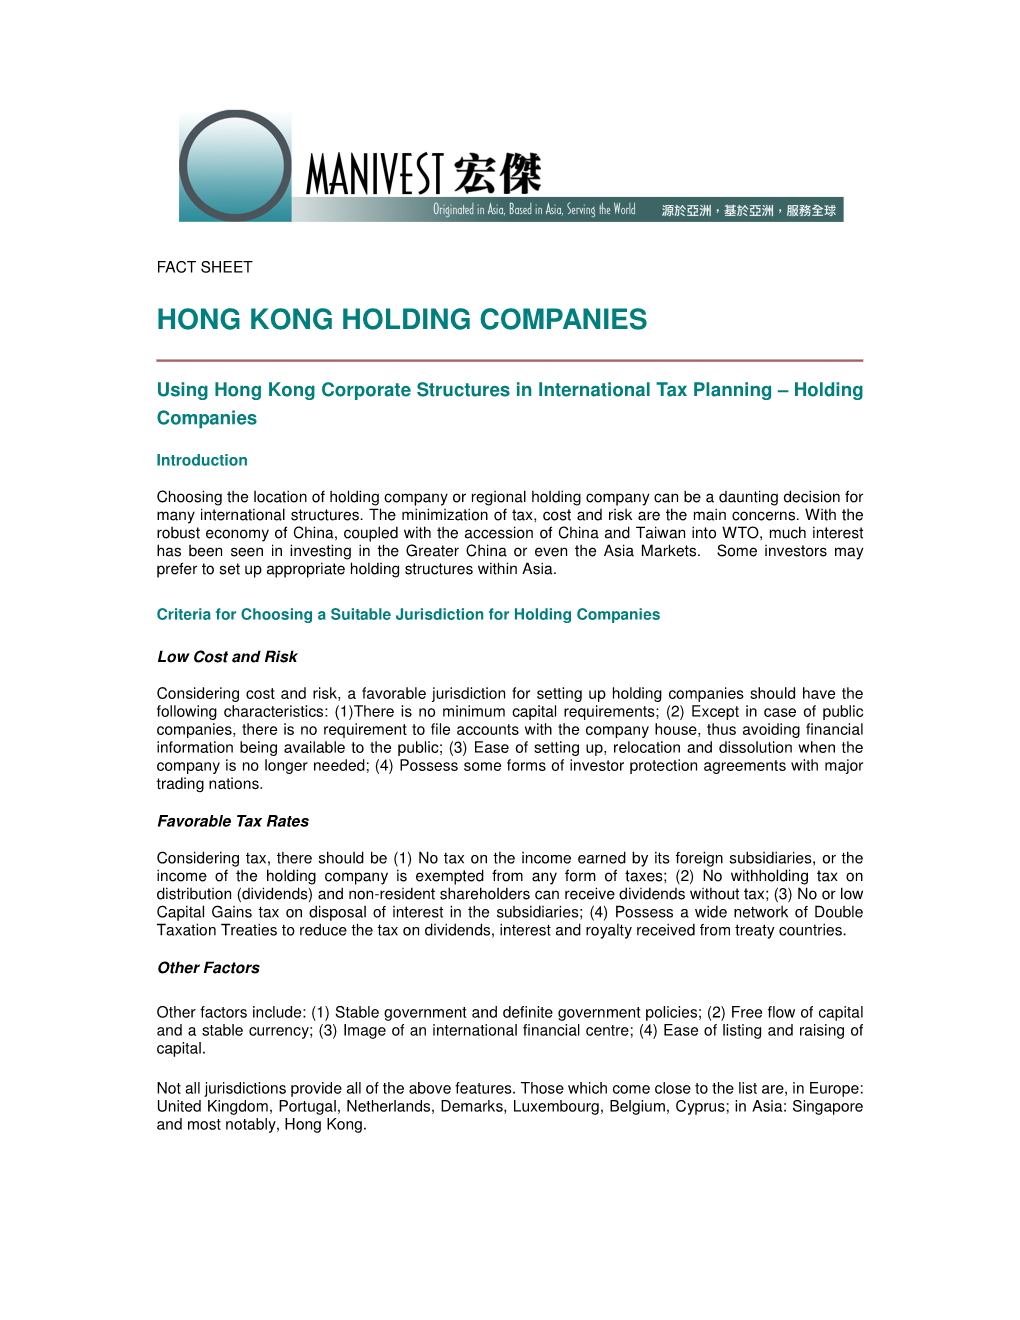 Hong Kong Holding Companies